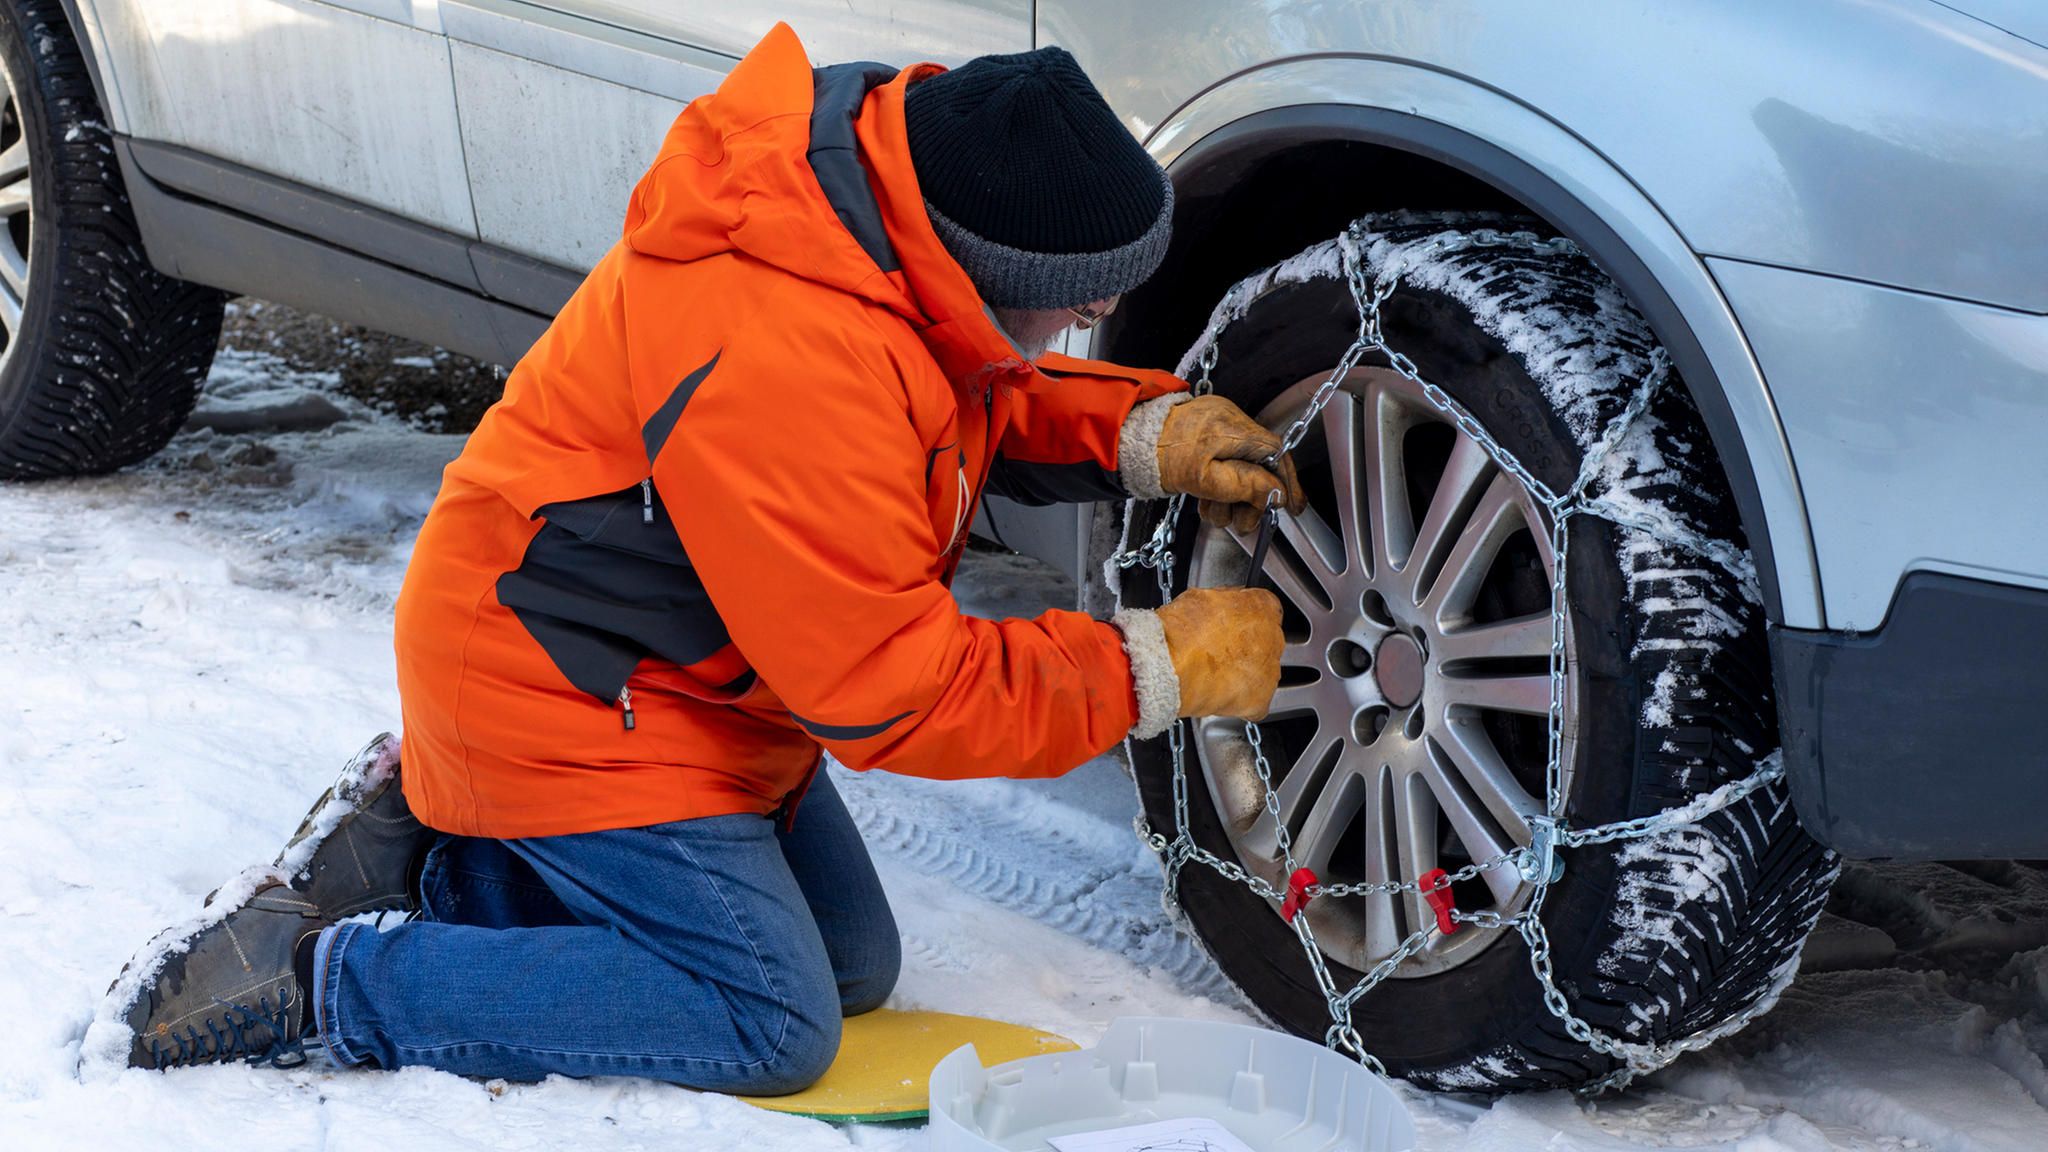 Winterreifen: Hyundai präsentiert Autoreifen mit integrierten Schneeketten